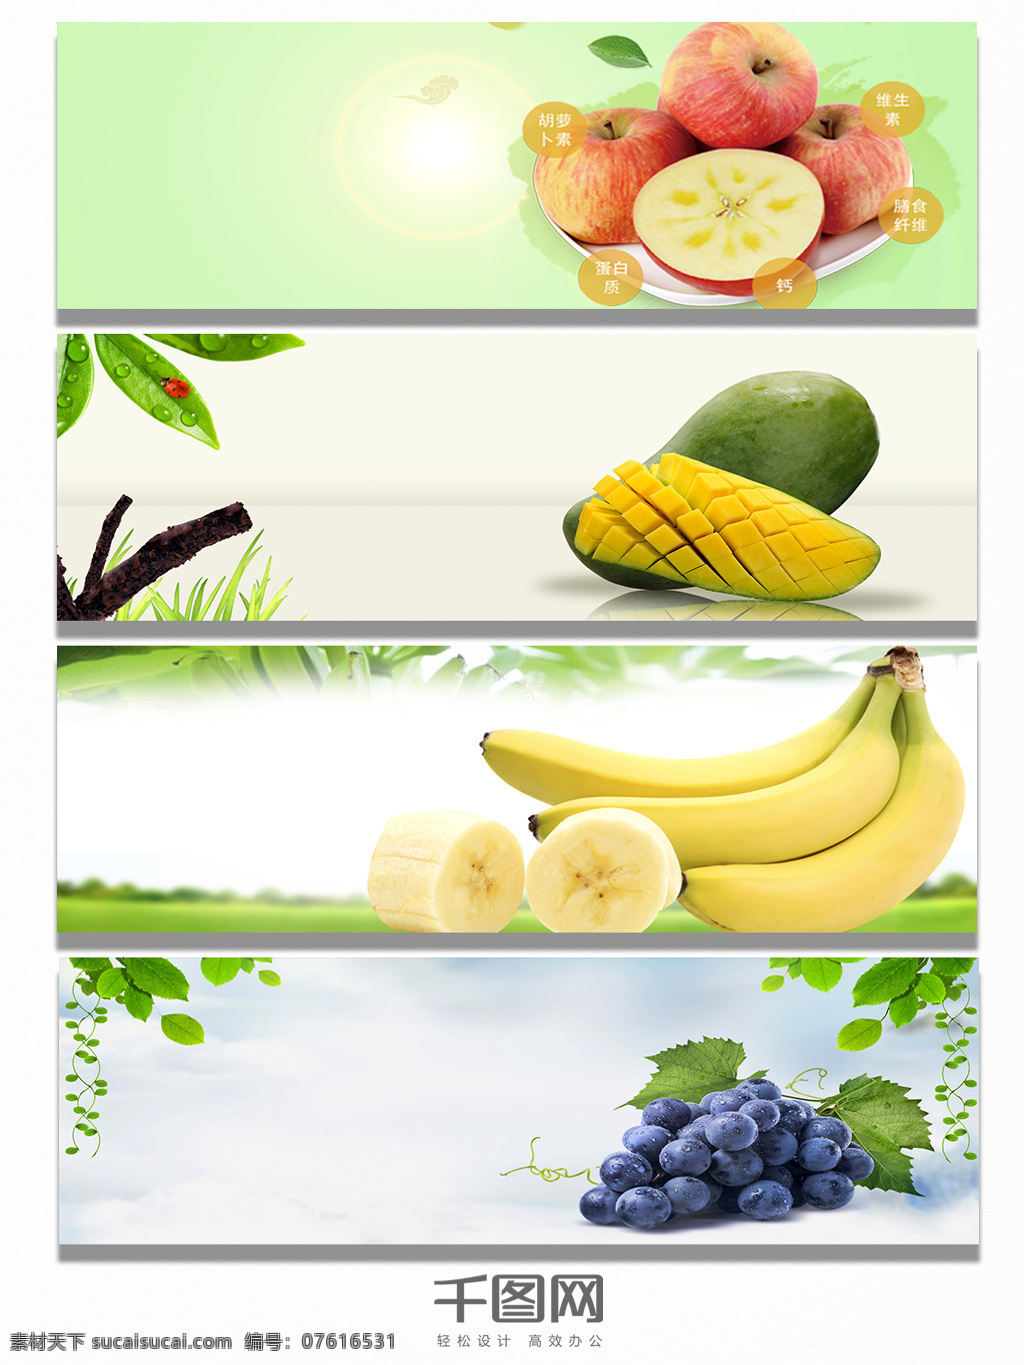 水果 特写 banner 背景 局部 苹果 芒果 香蕉 葡萄 美味 多汁 绿色